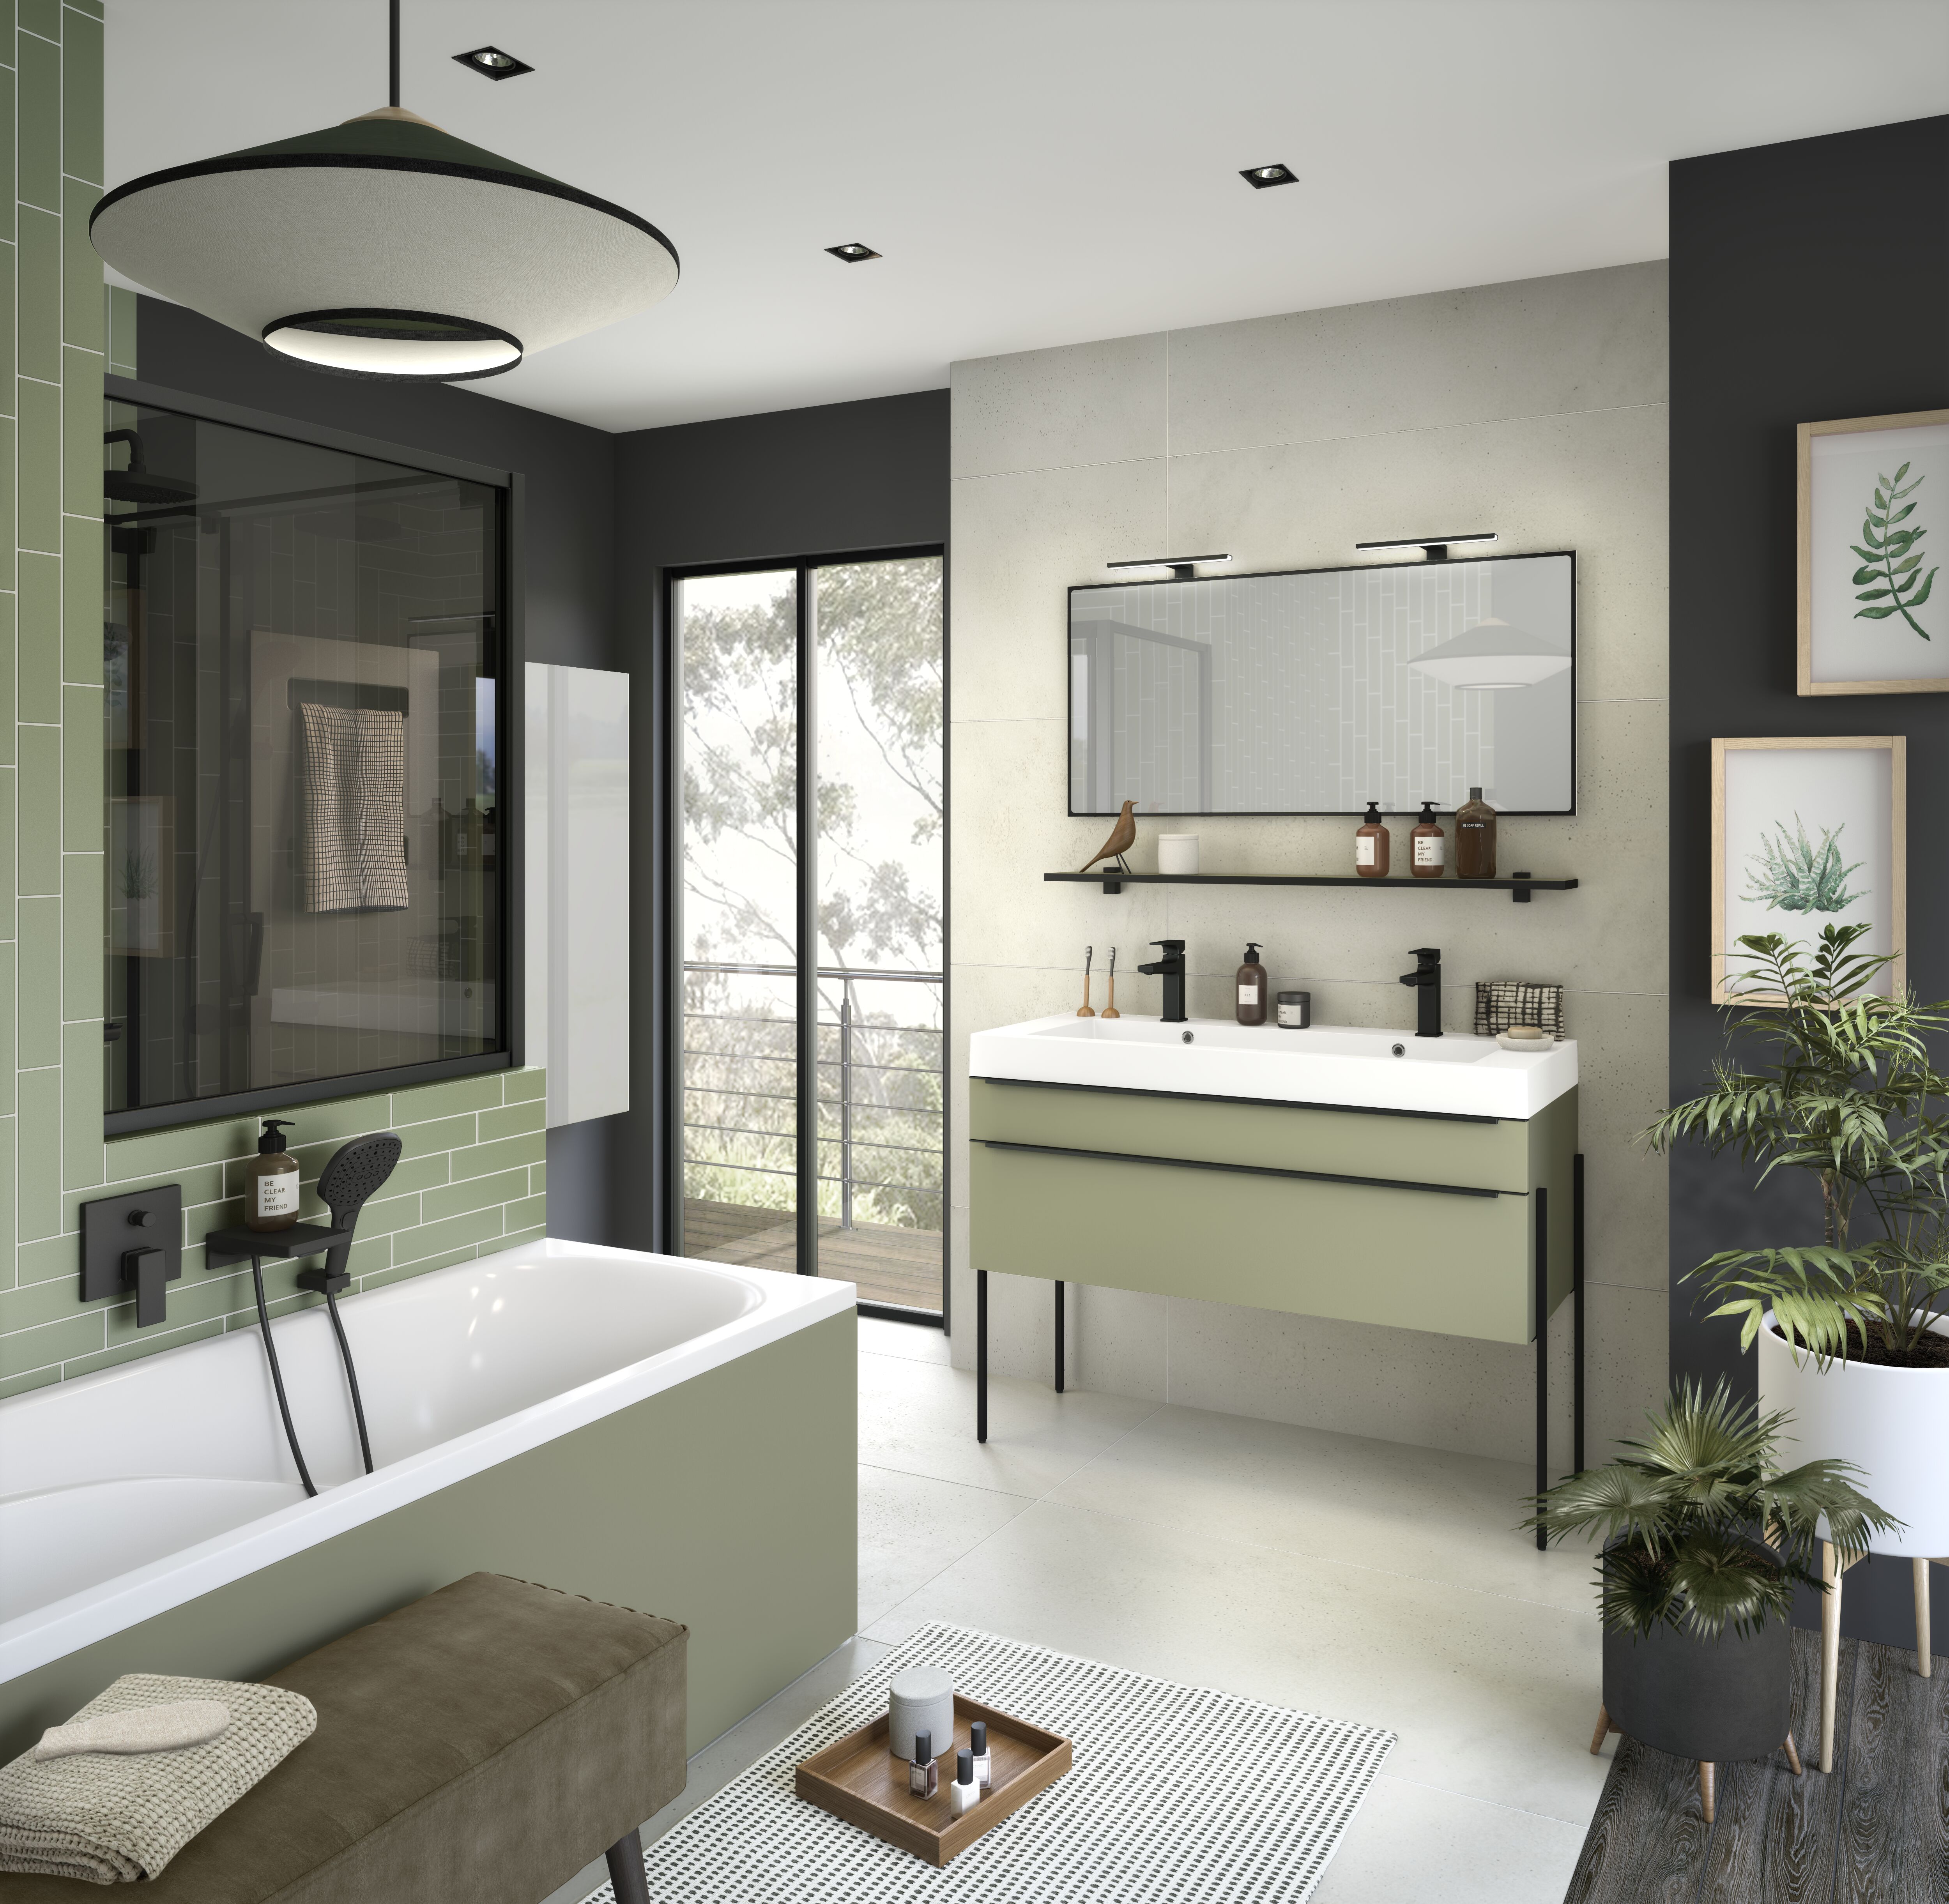 Salle de bain Inspiration vert olive mat 